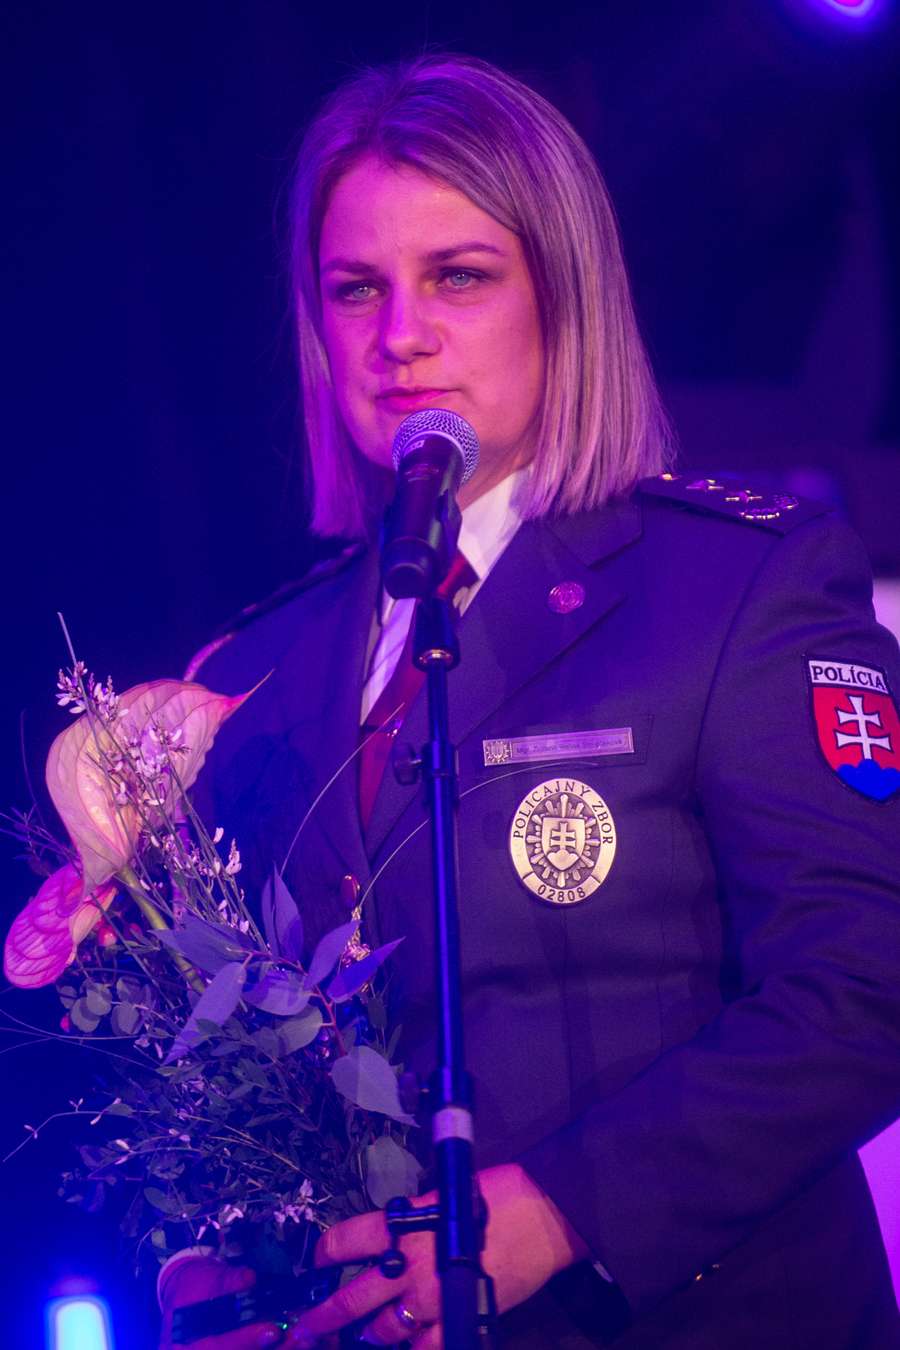 Zuzana Rehák Štefečeková